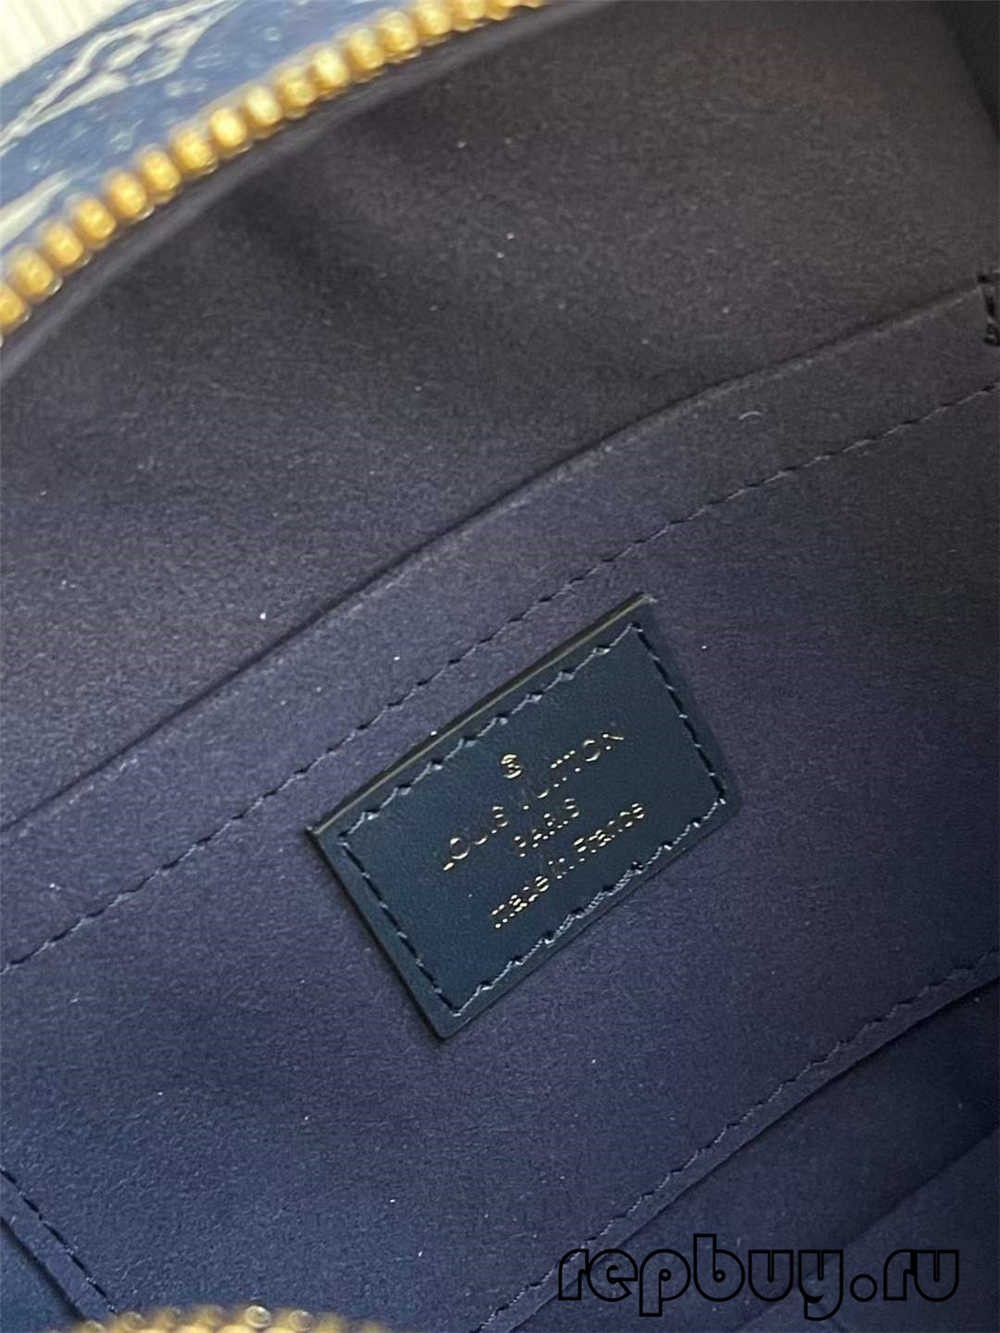 Louis Vuitton SQUARE bac M59611 tayada ugu sareysa boorsada nuqul ka mid ah (2022 updated) -Tayada ugu wanaagsan